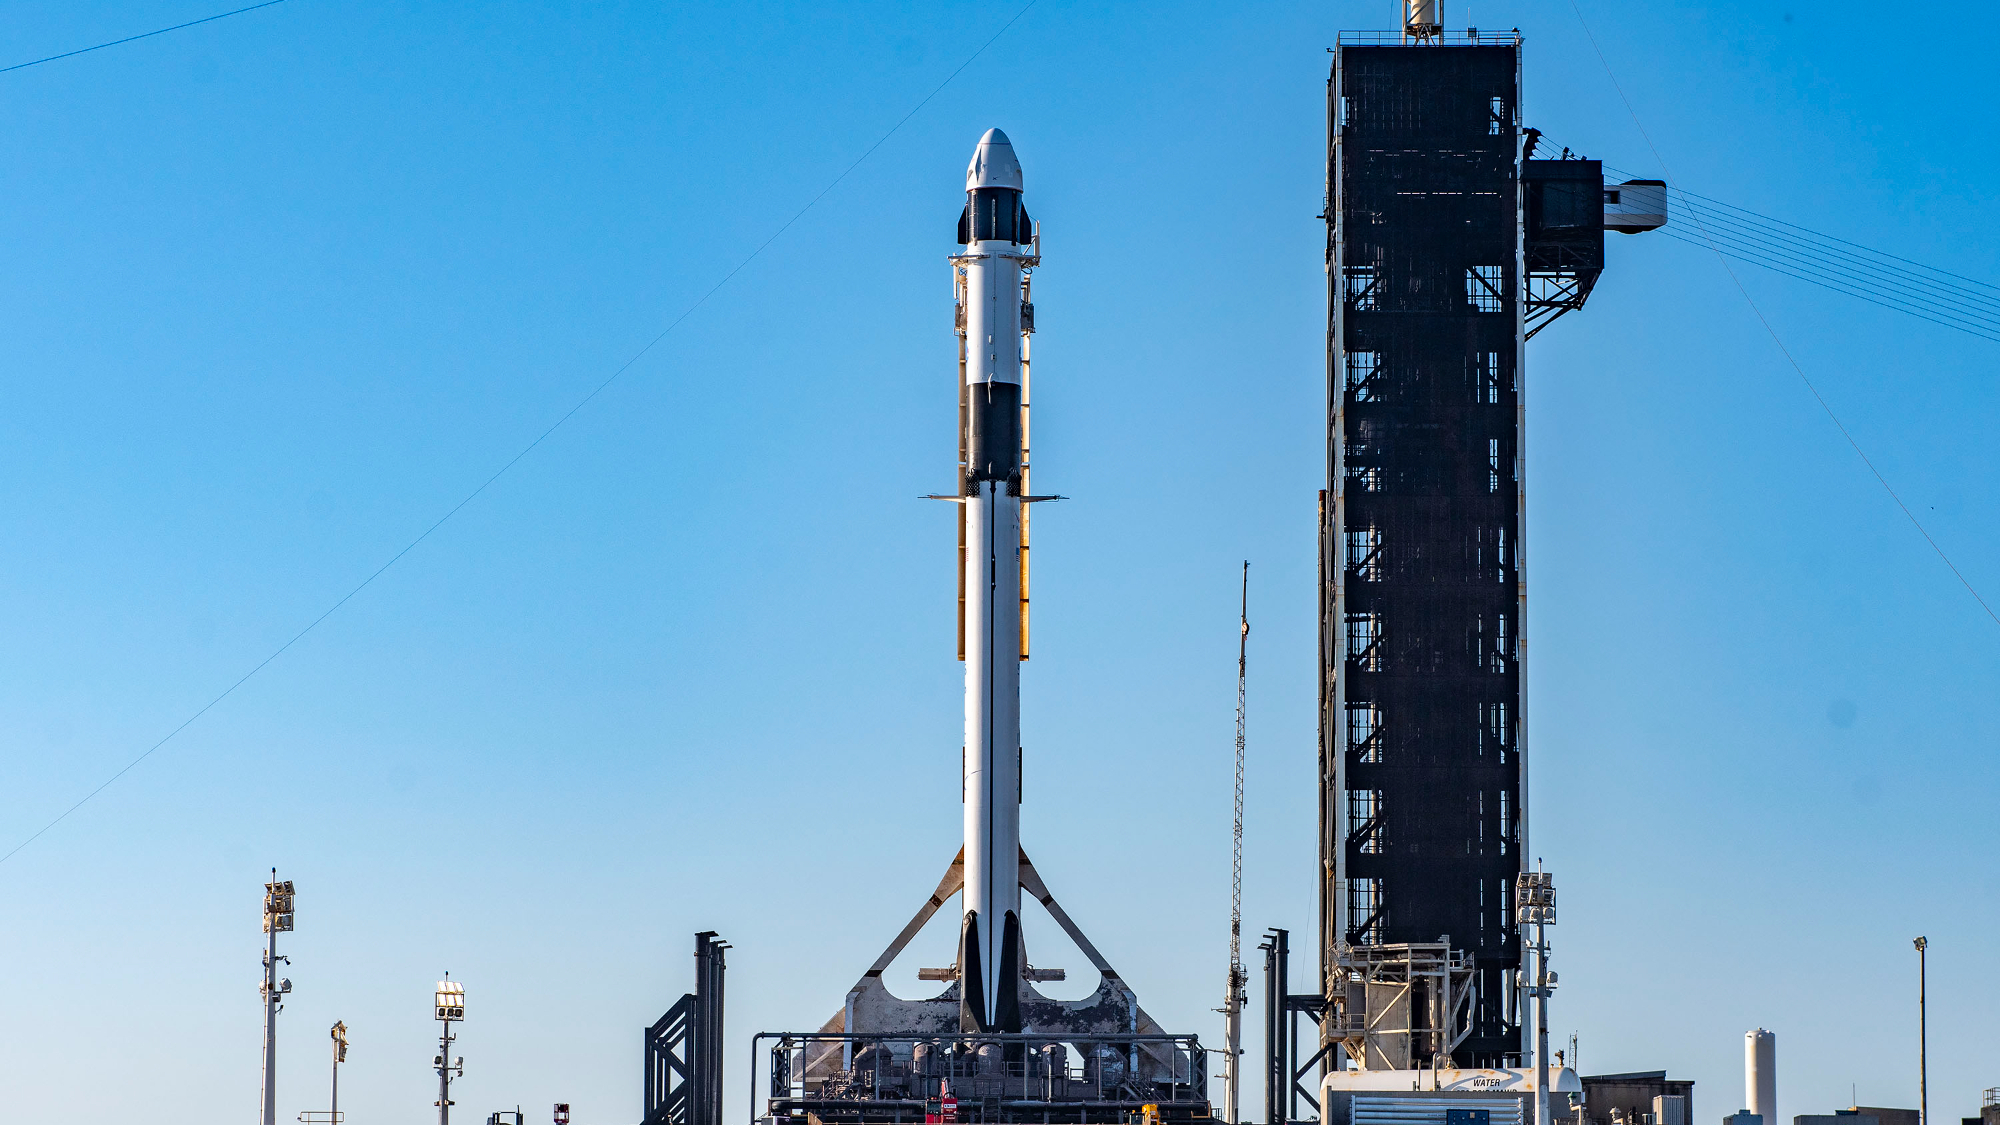 Eine schwarz-weiße Rakete mit weißer Kapsel steht auf der Startrampe mit blauem Himmel im Hintergrund.